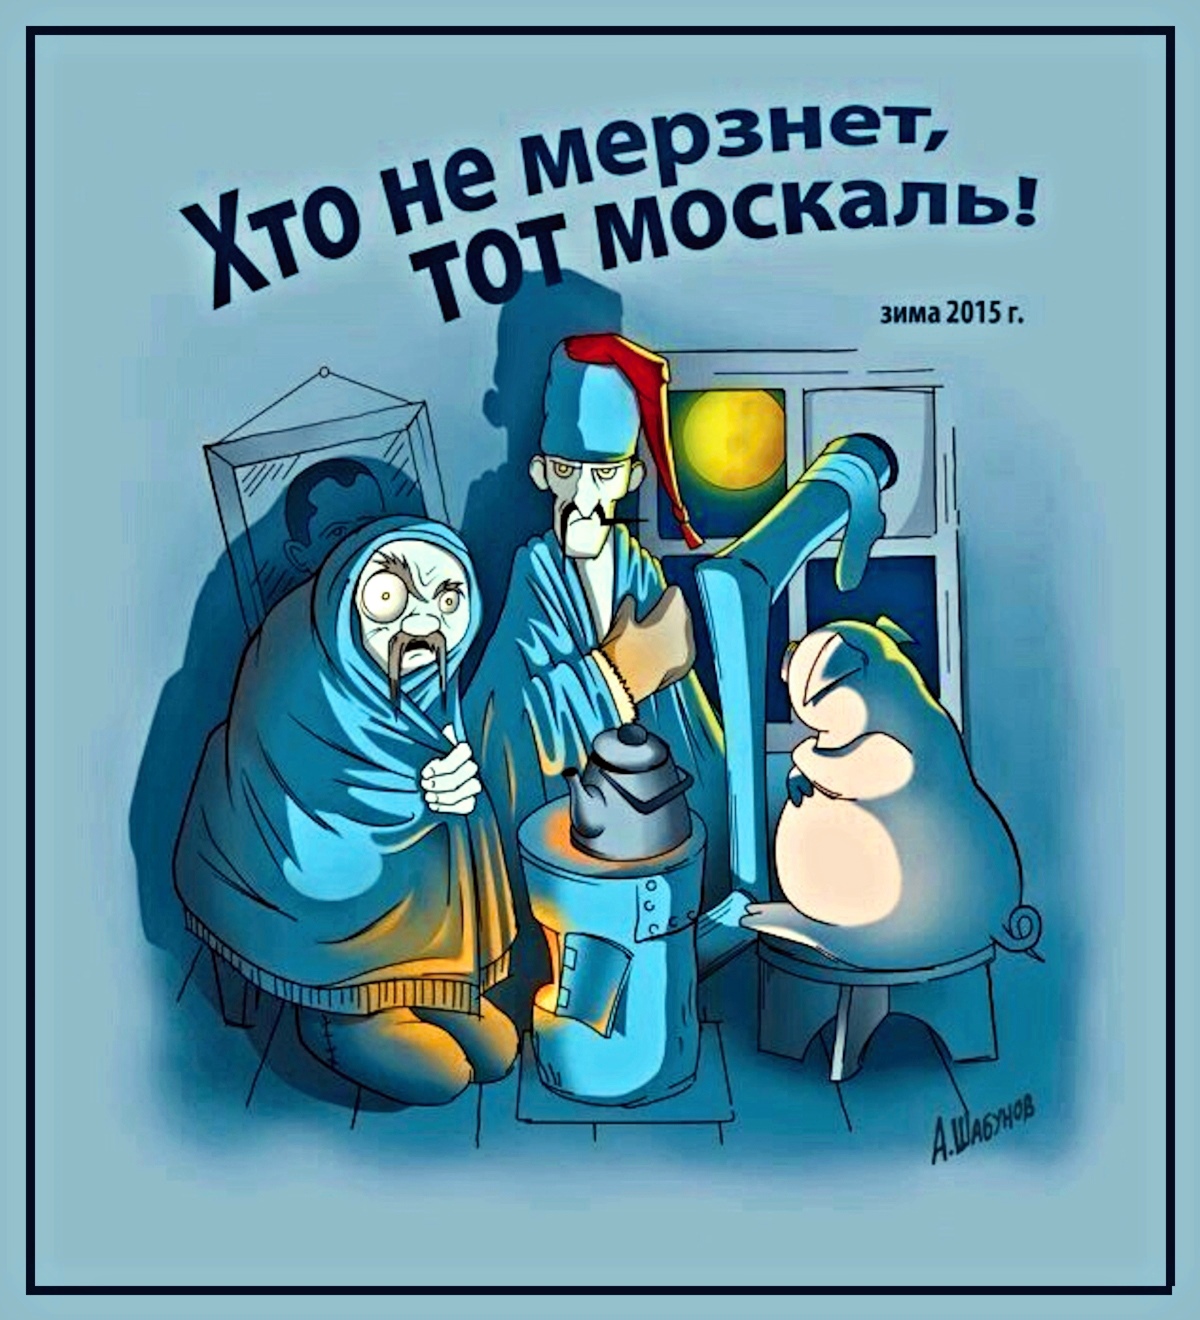 00 Winter 2015. Those Moskali aren't freezing-26-06-14.jpg